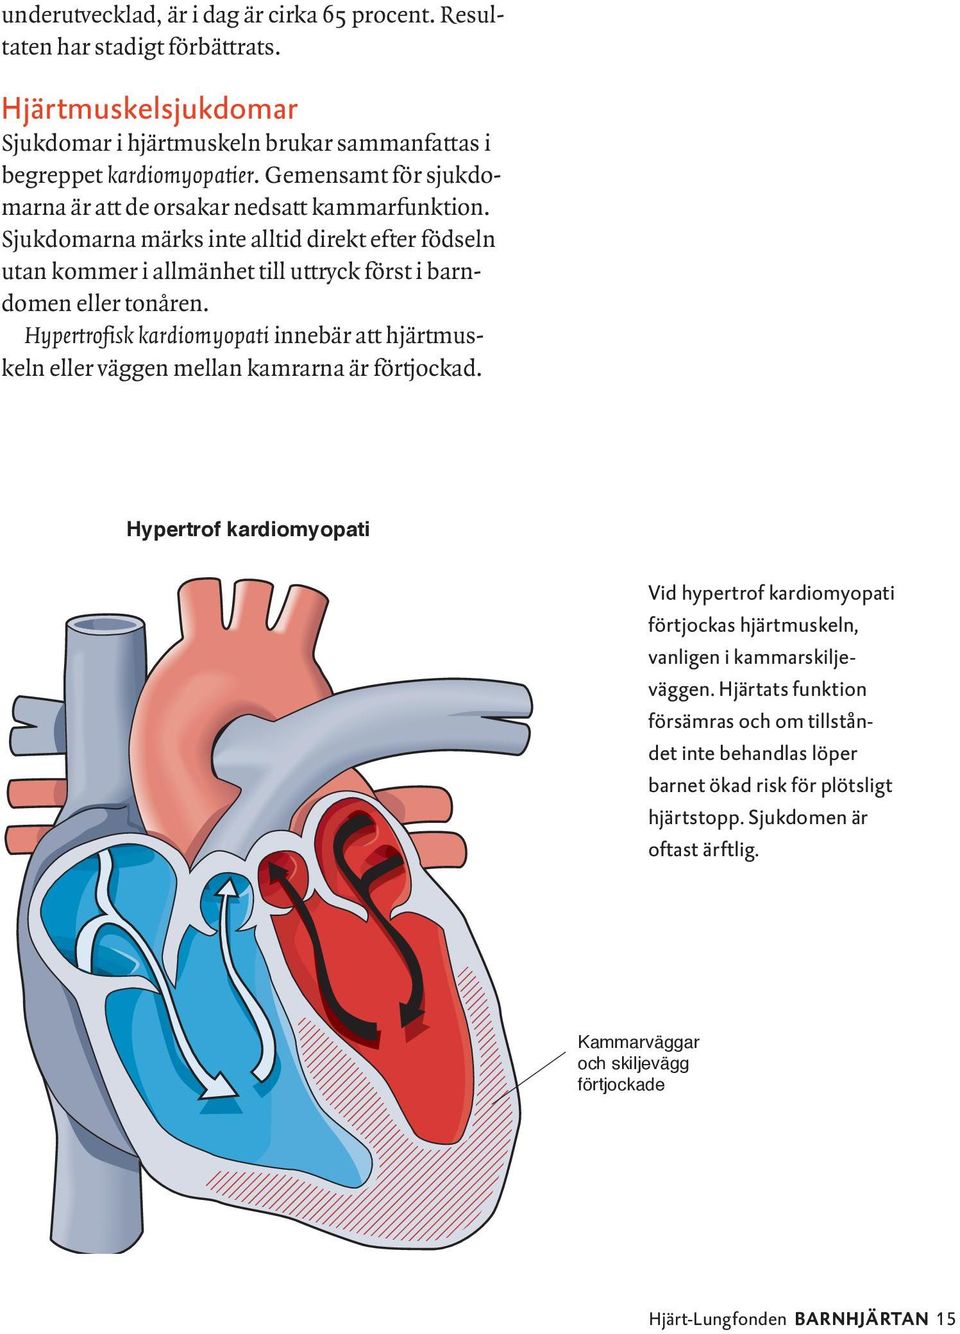 Hypertrofisk kardiomyopati innebär att hjärtmuskeln eller väggen mellan kamrarna är förtjockad.